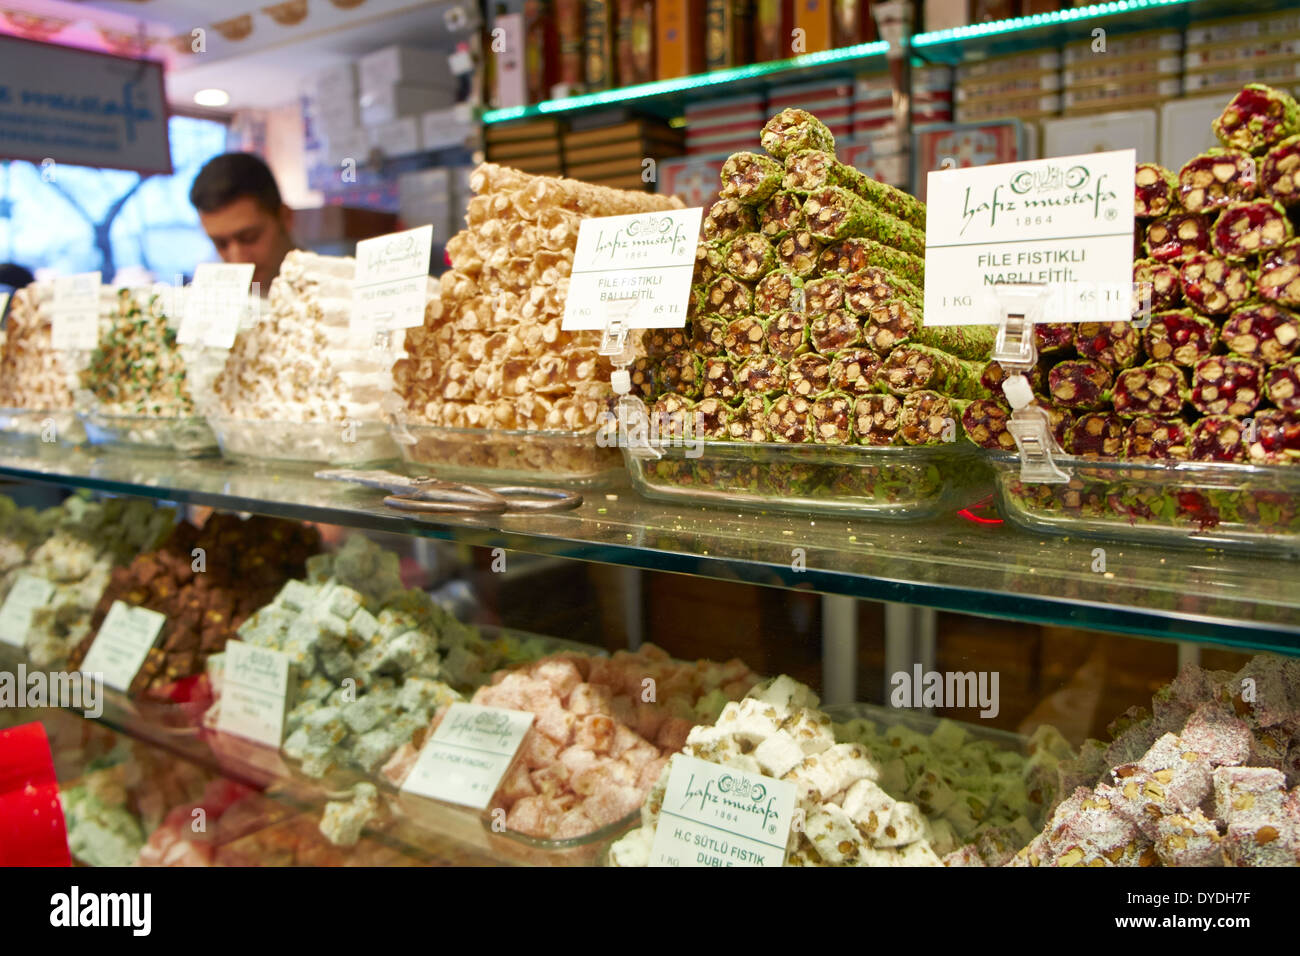 The Hafiz Mustafa Turkish Delight shop in Instanbul,Turkey. Stock Photo